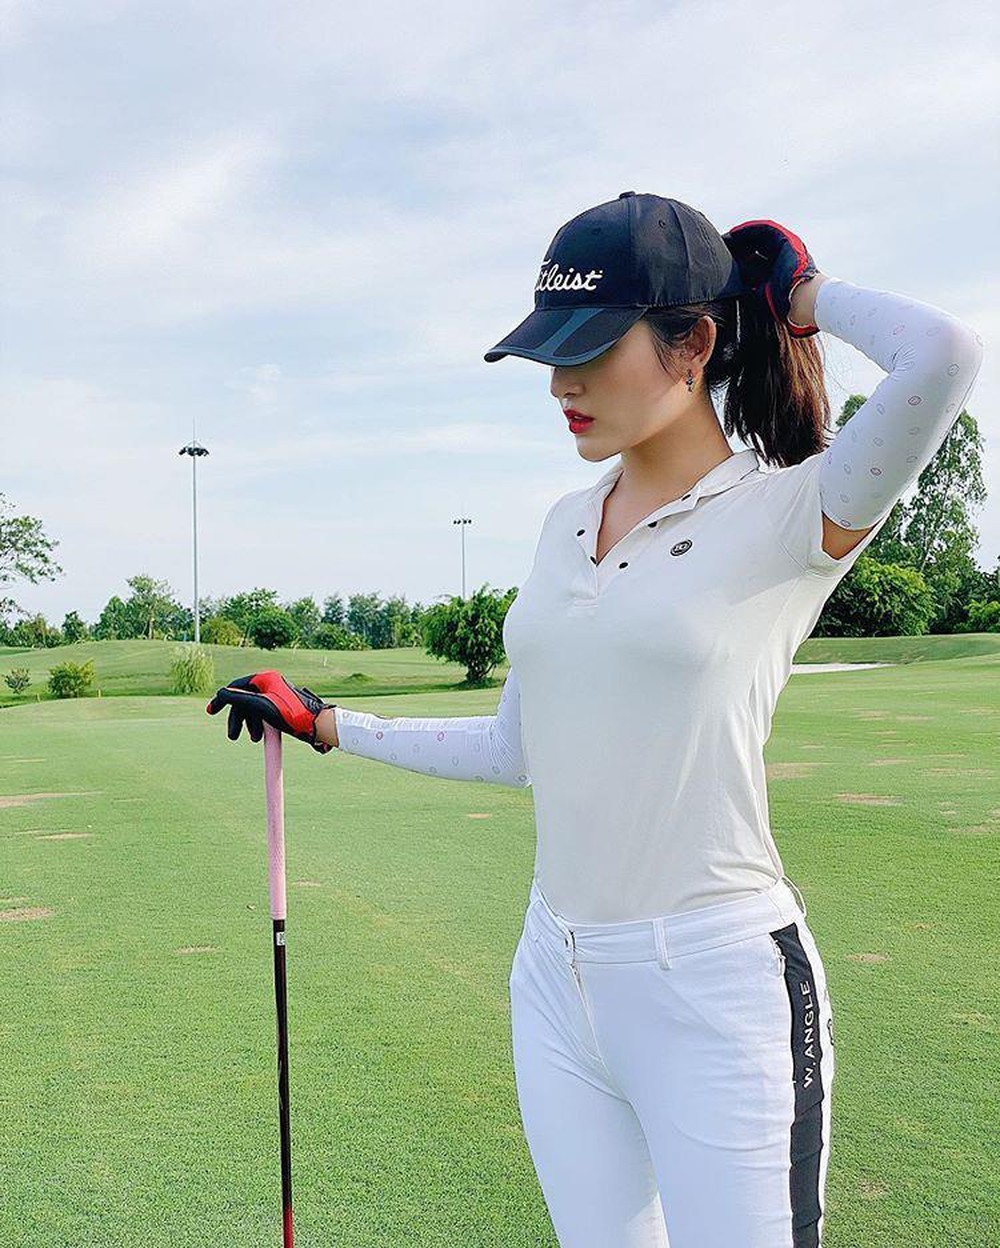  
Môn thể thao Golf thường chỉ được ưa chuộng bởi giới nhà giàu lắm tiền (Ảnh FB Nguyen Trang Huyen My)